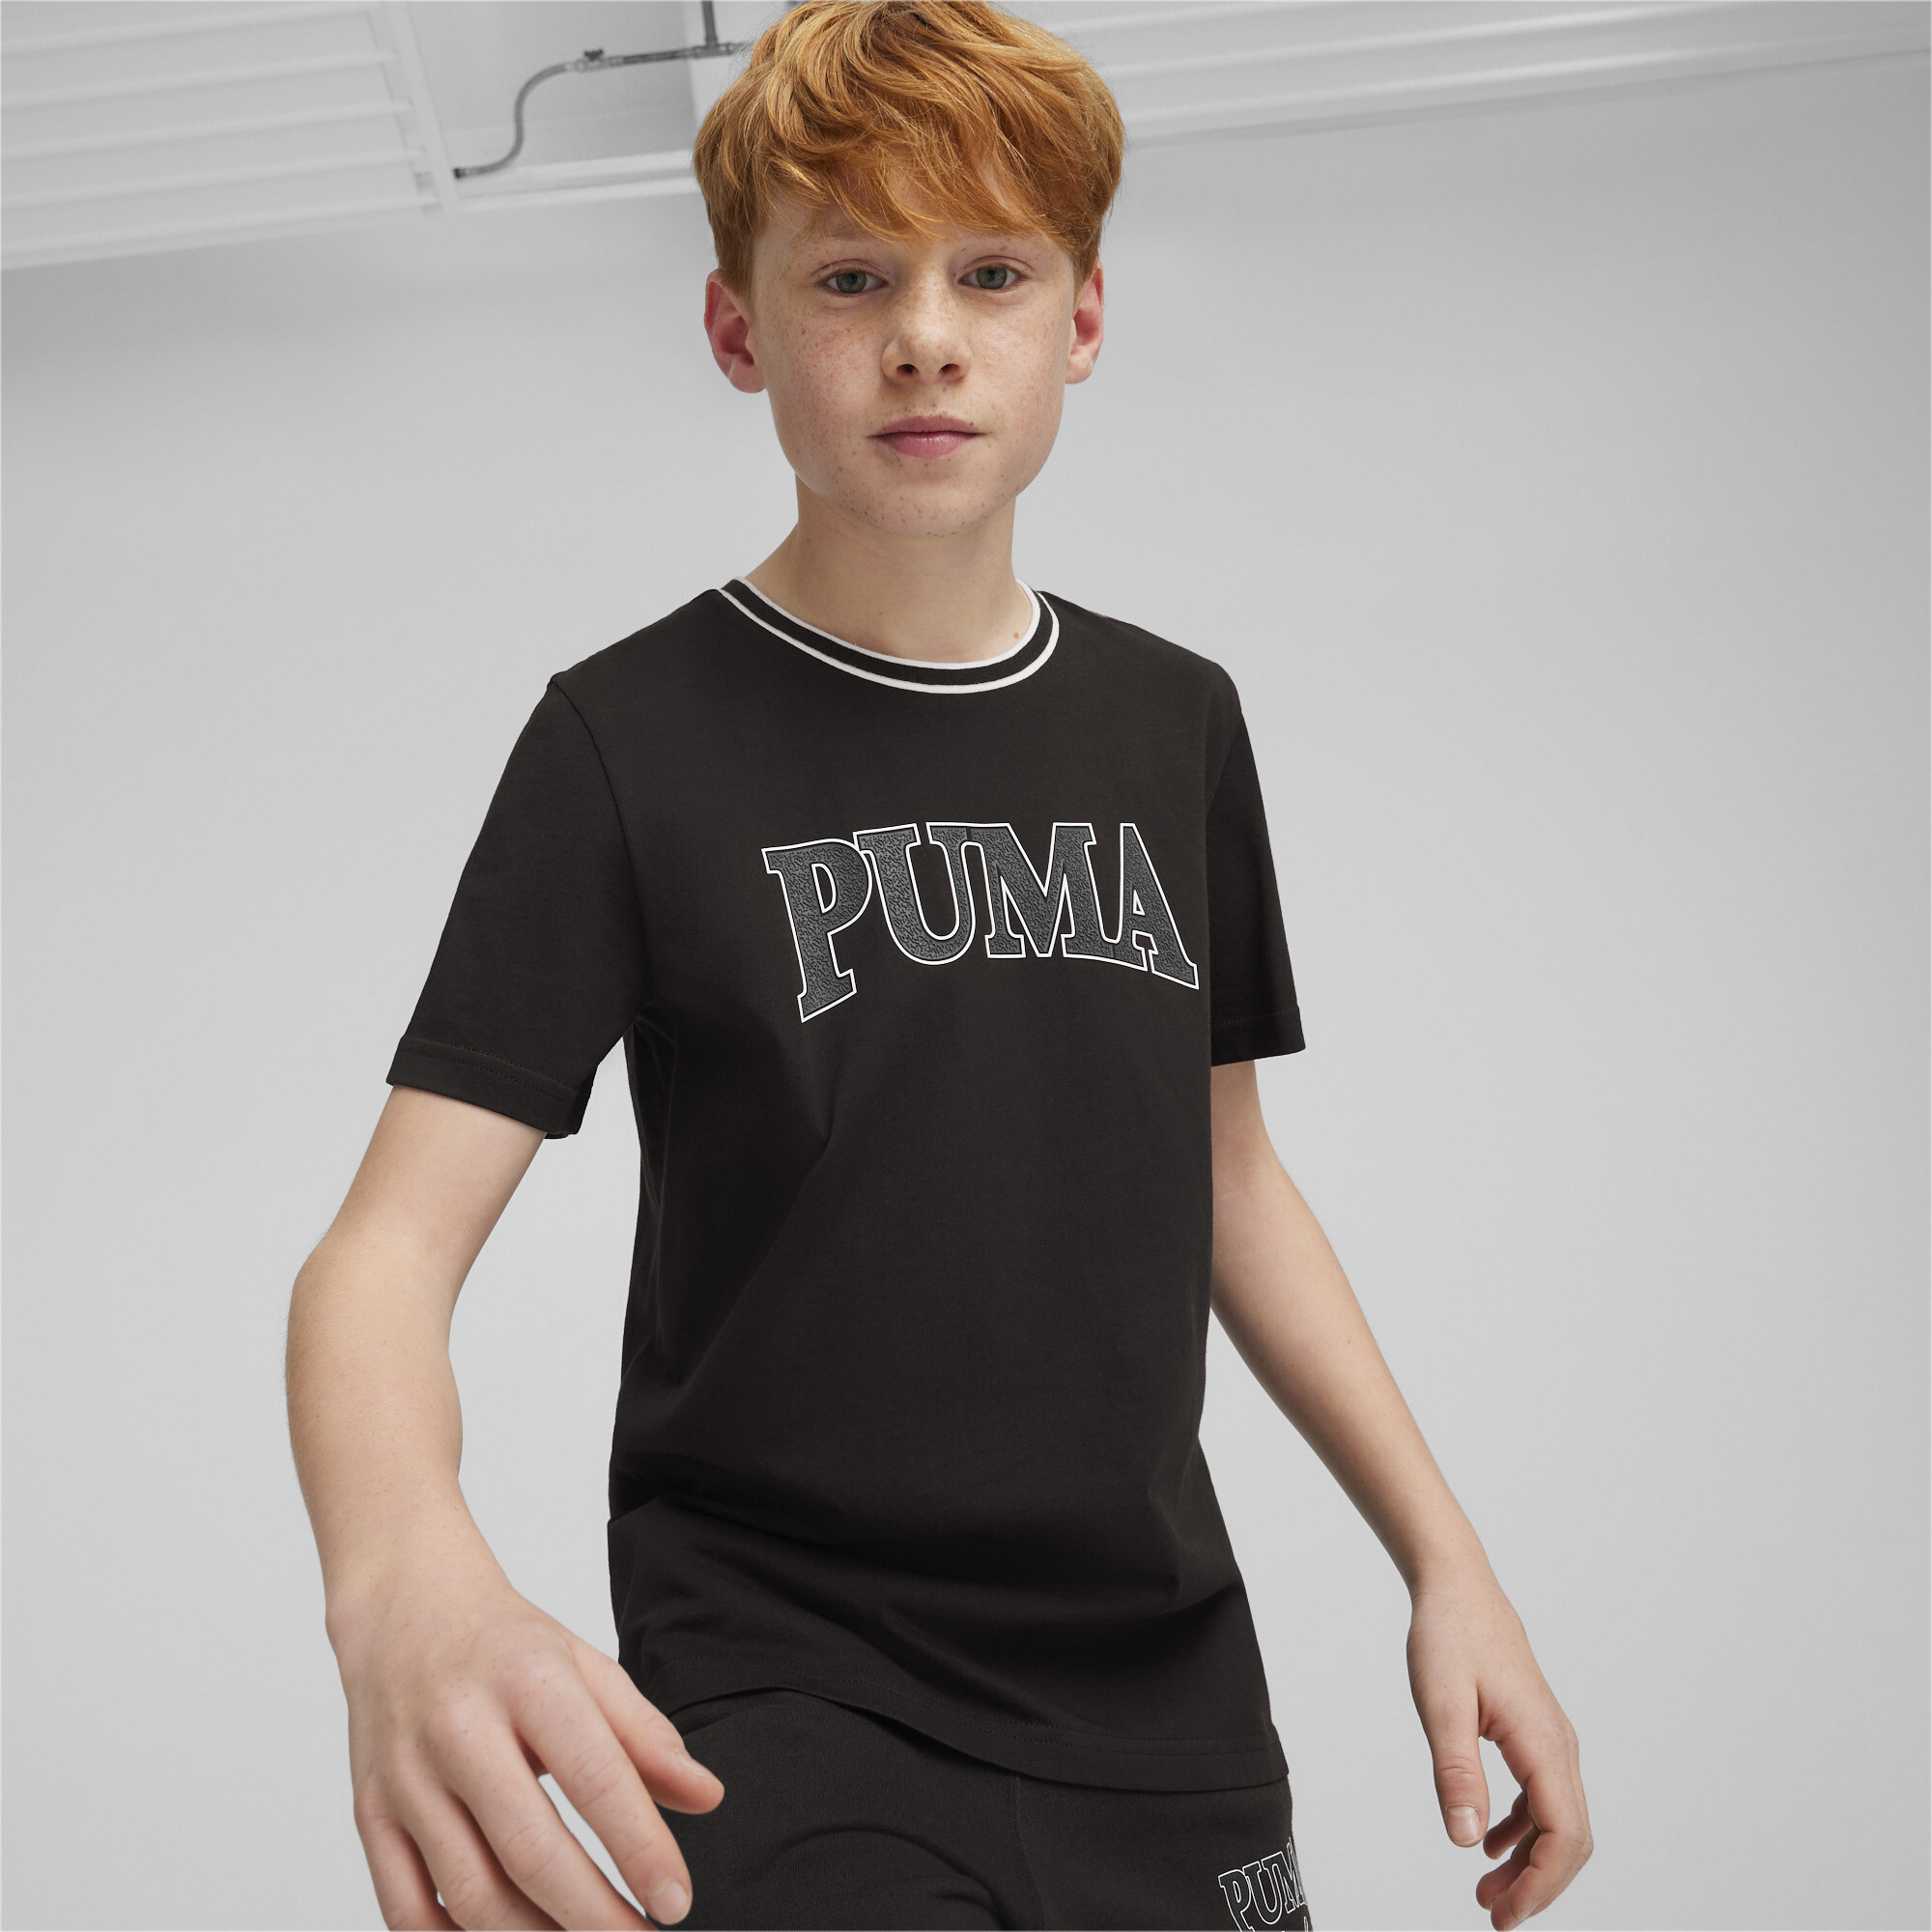 Men's Puma SQUAD Youth T-Shirt, Black, Size 7-8Y, Age